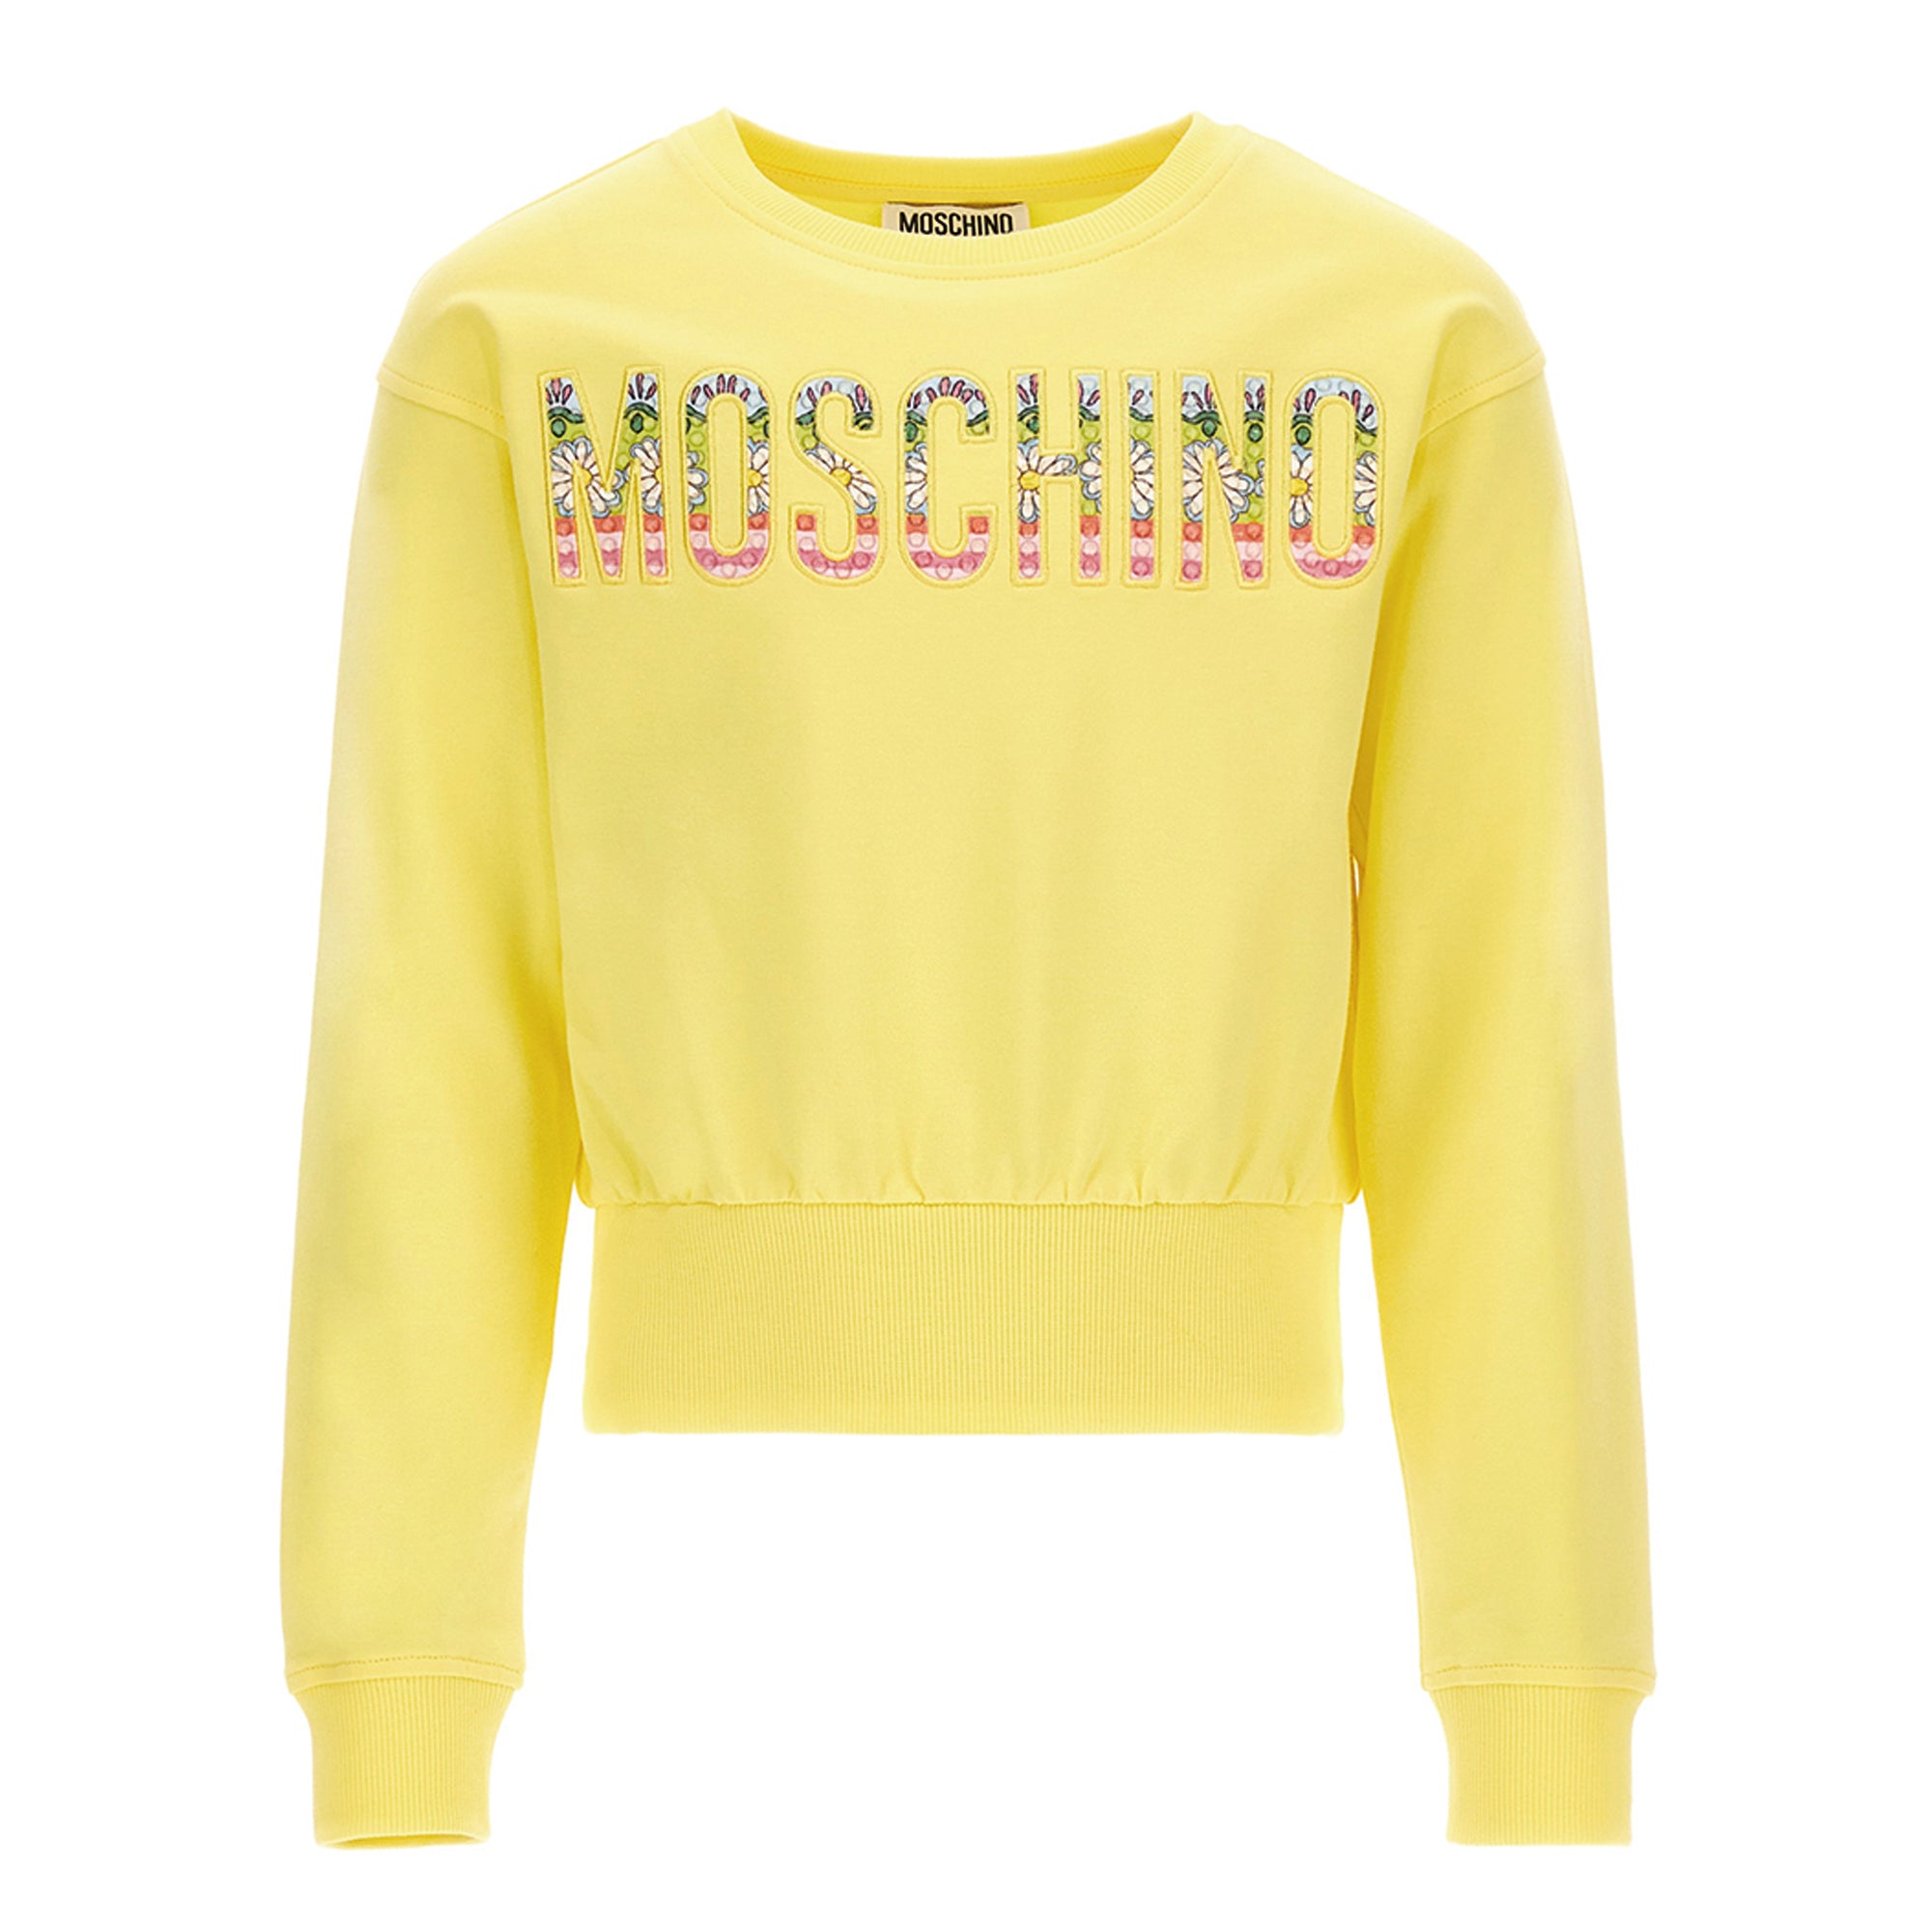 Moschino Flower Power Sweatshirt